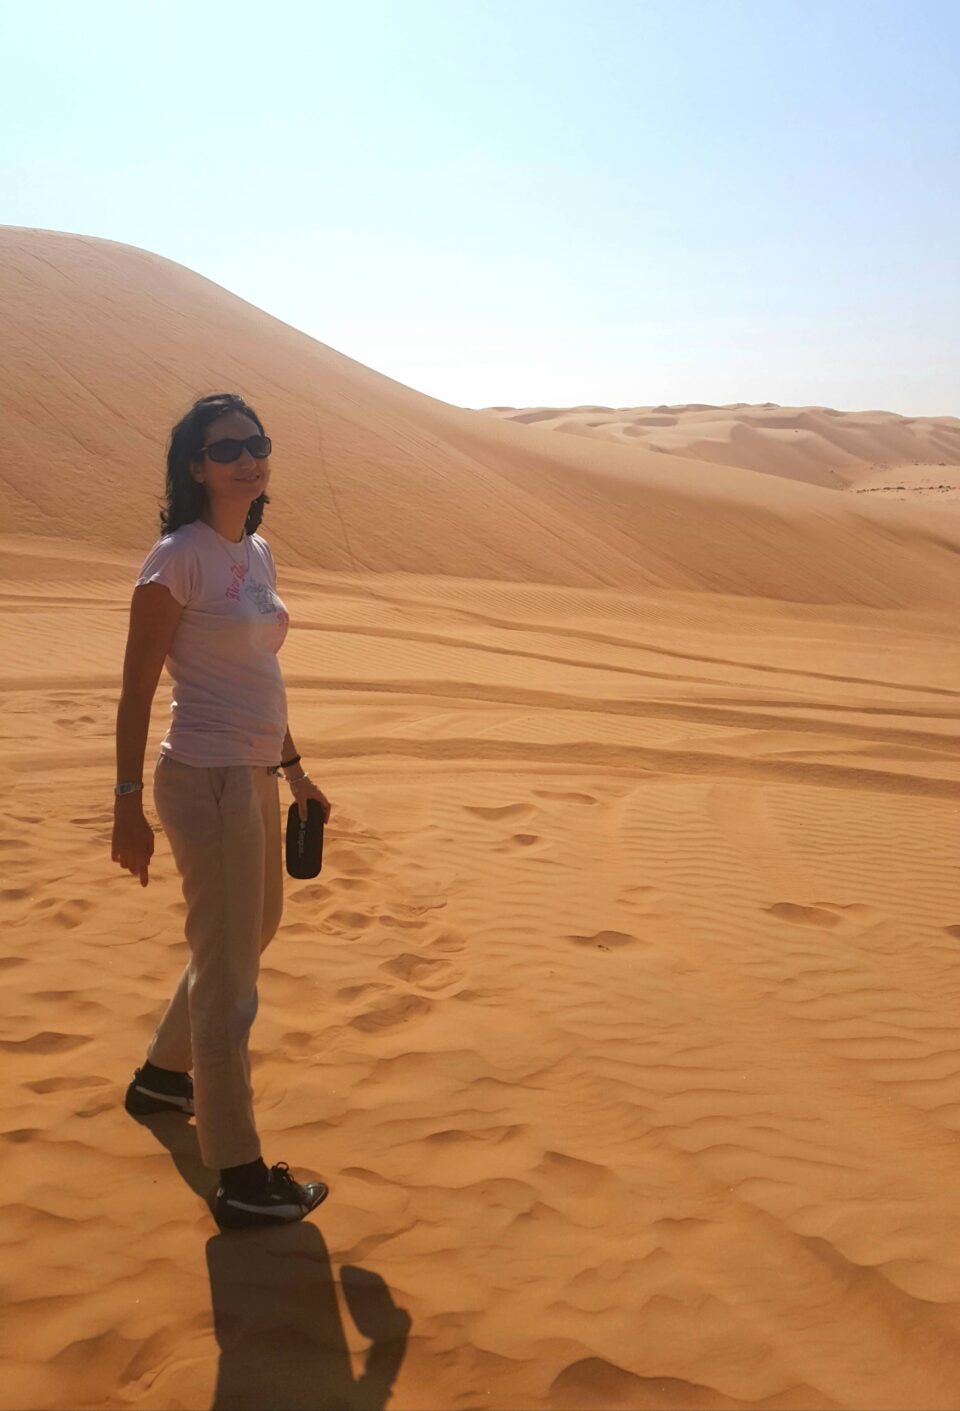 Camminare nell'immensità del deserto è impagabile